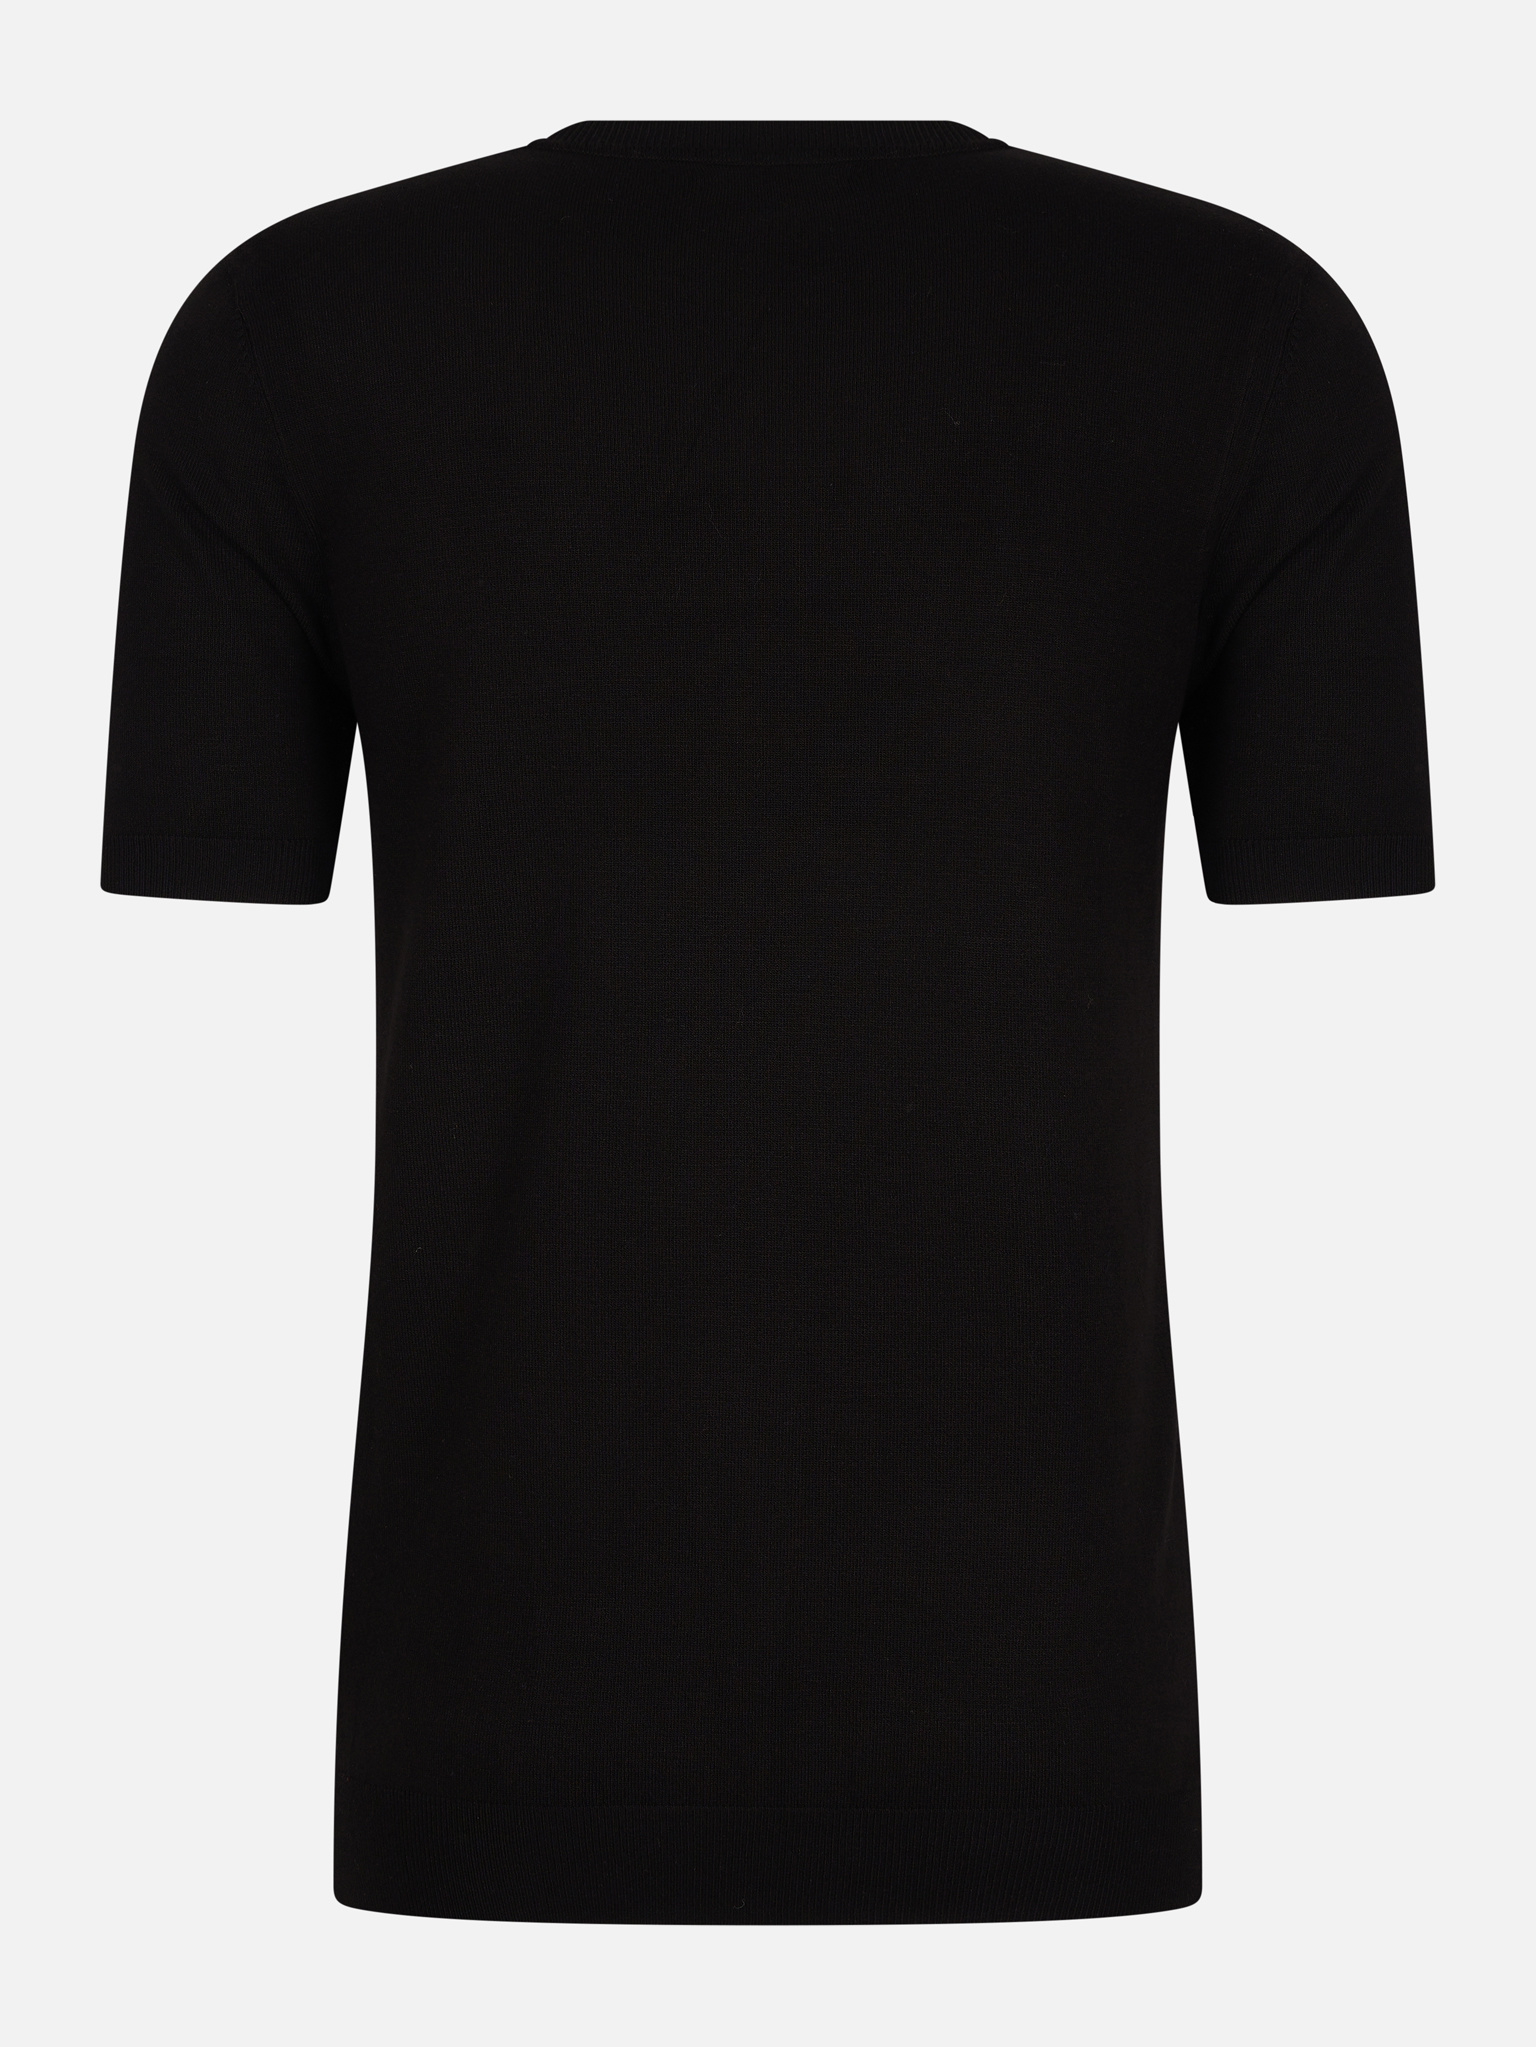 boom Alstublieft Eigenaardig Zwart T-shirt heren kopen voor €29,95 | Valenci - VALENCI